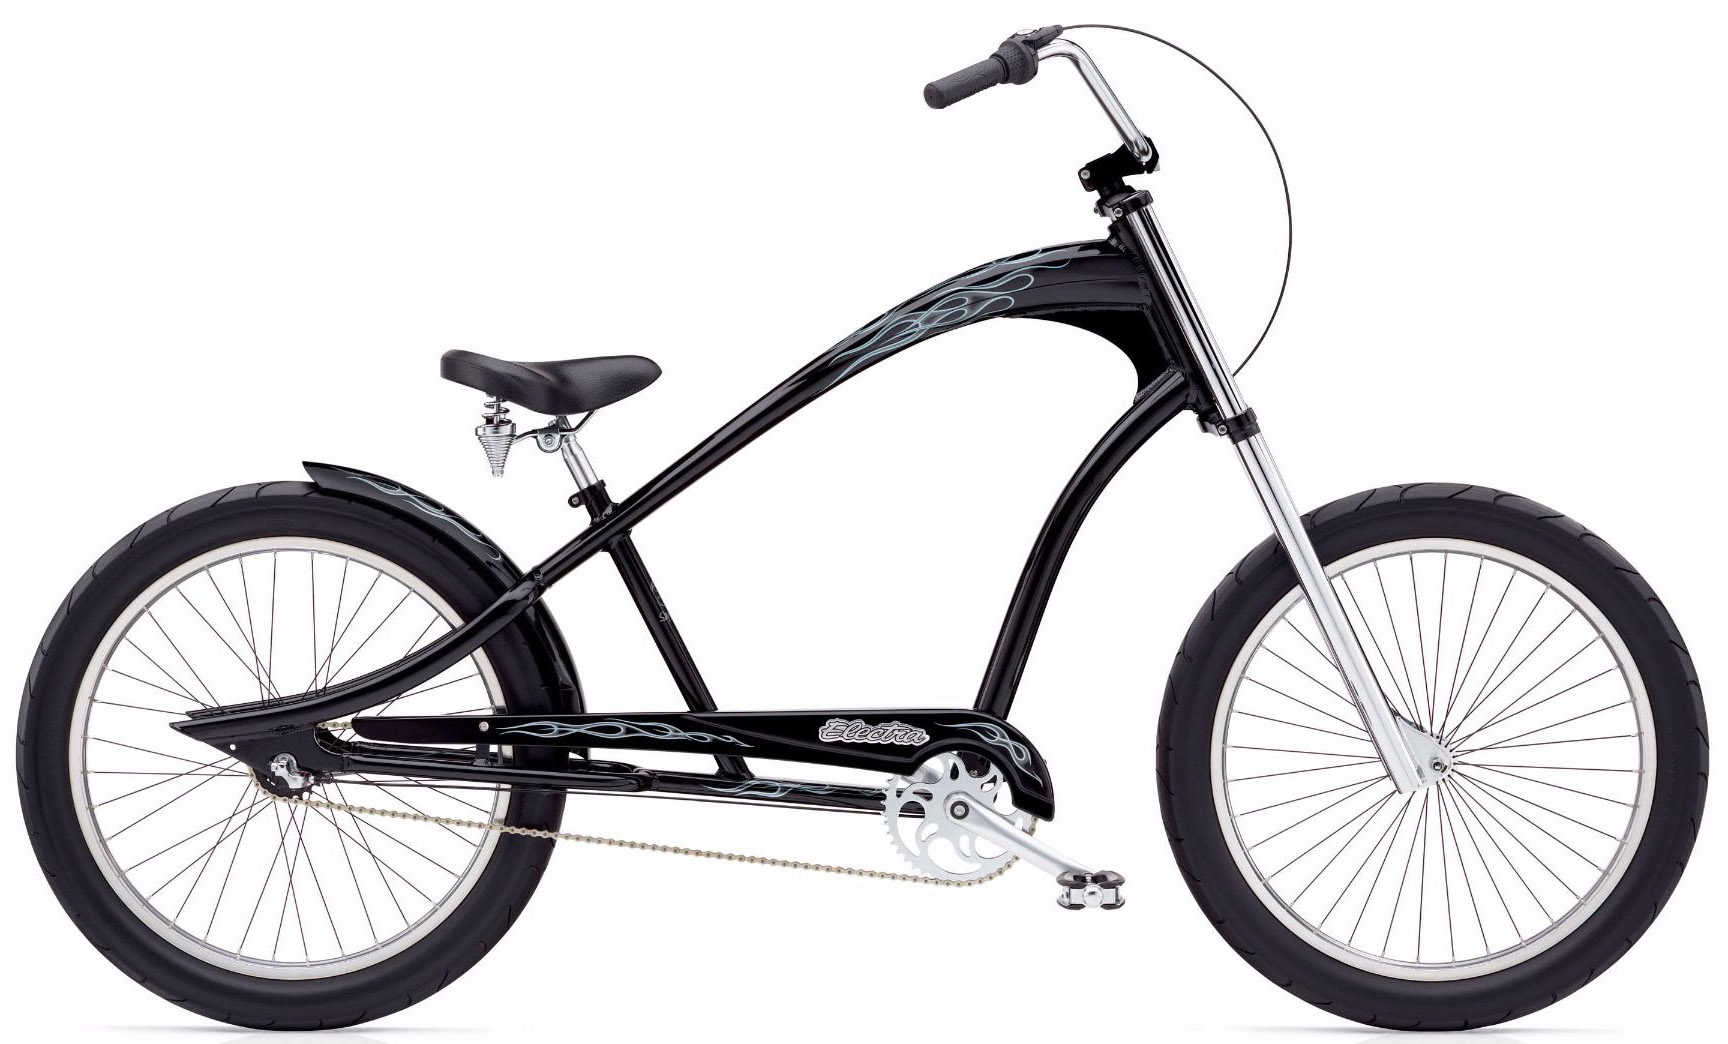  Отзывы о Подростковом велосипеде Electra Ghostrider 3i 2020